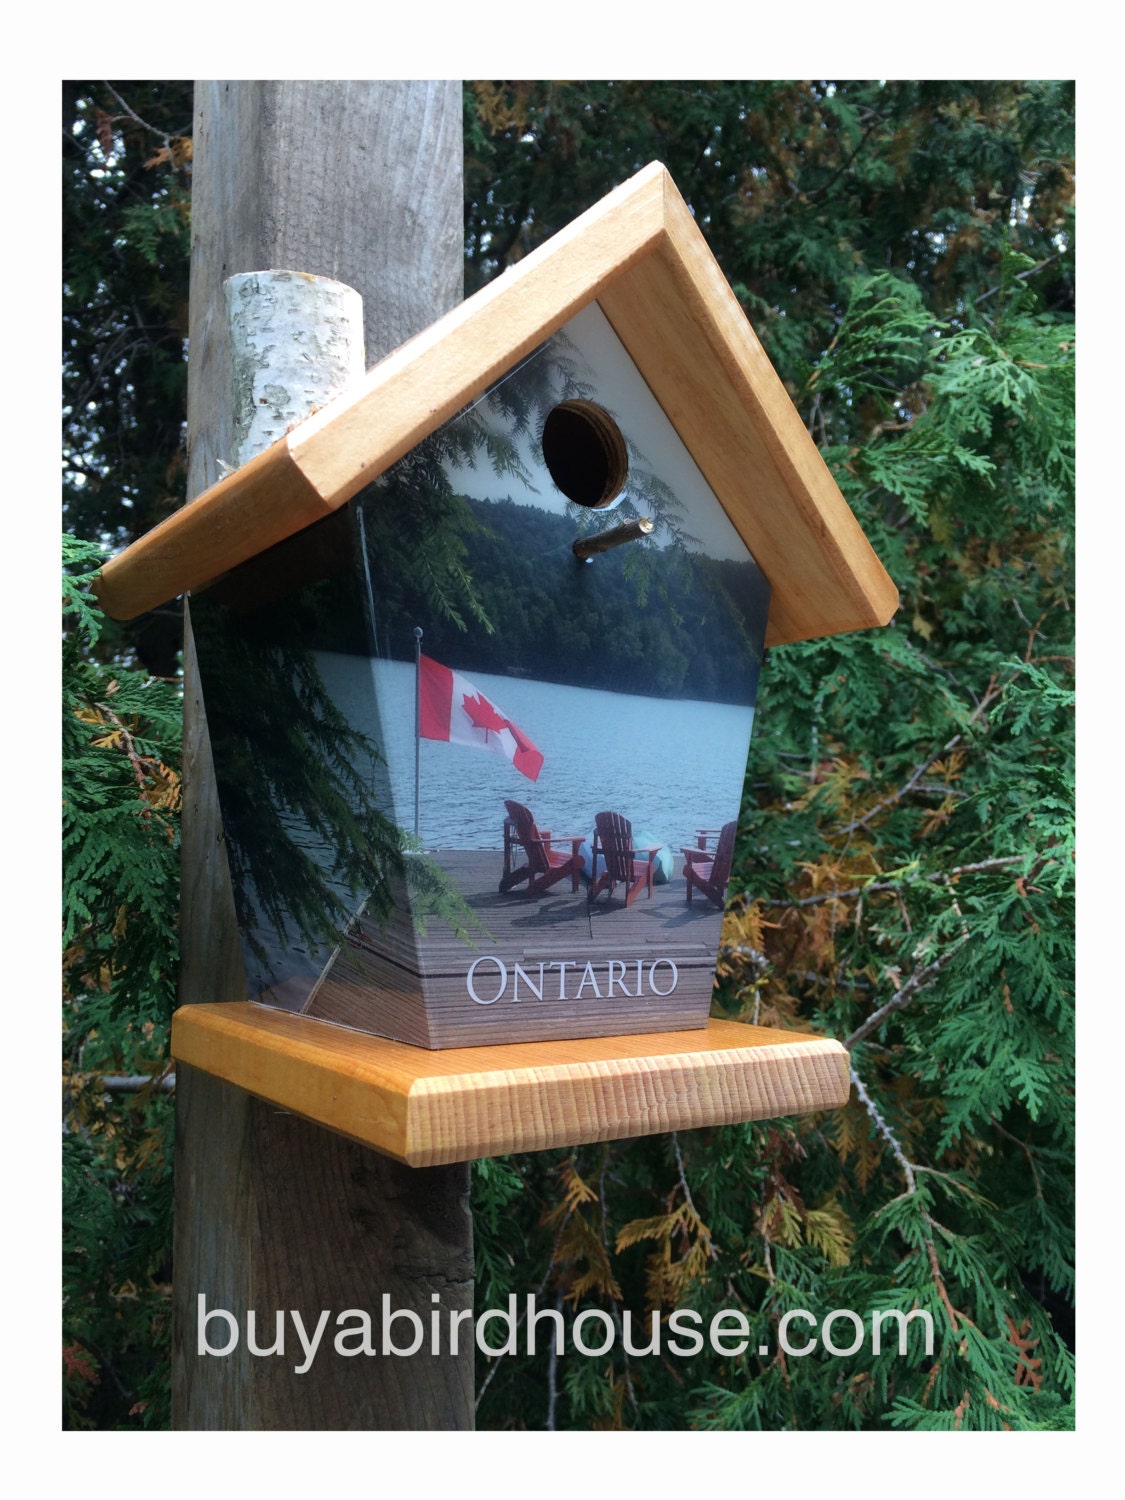 Ontario Birdhouse/Feeder